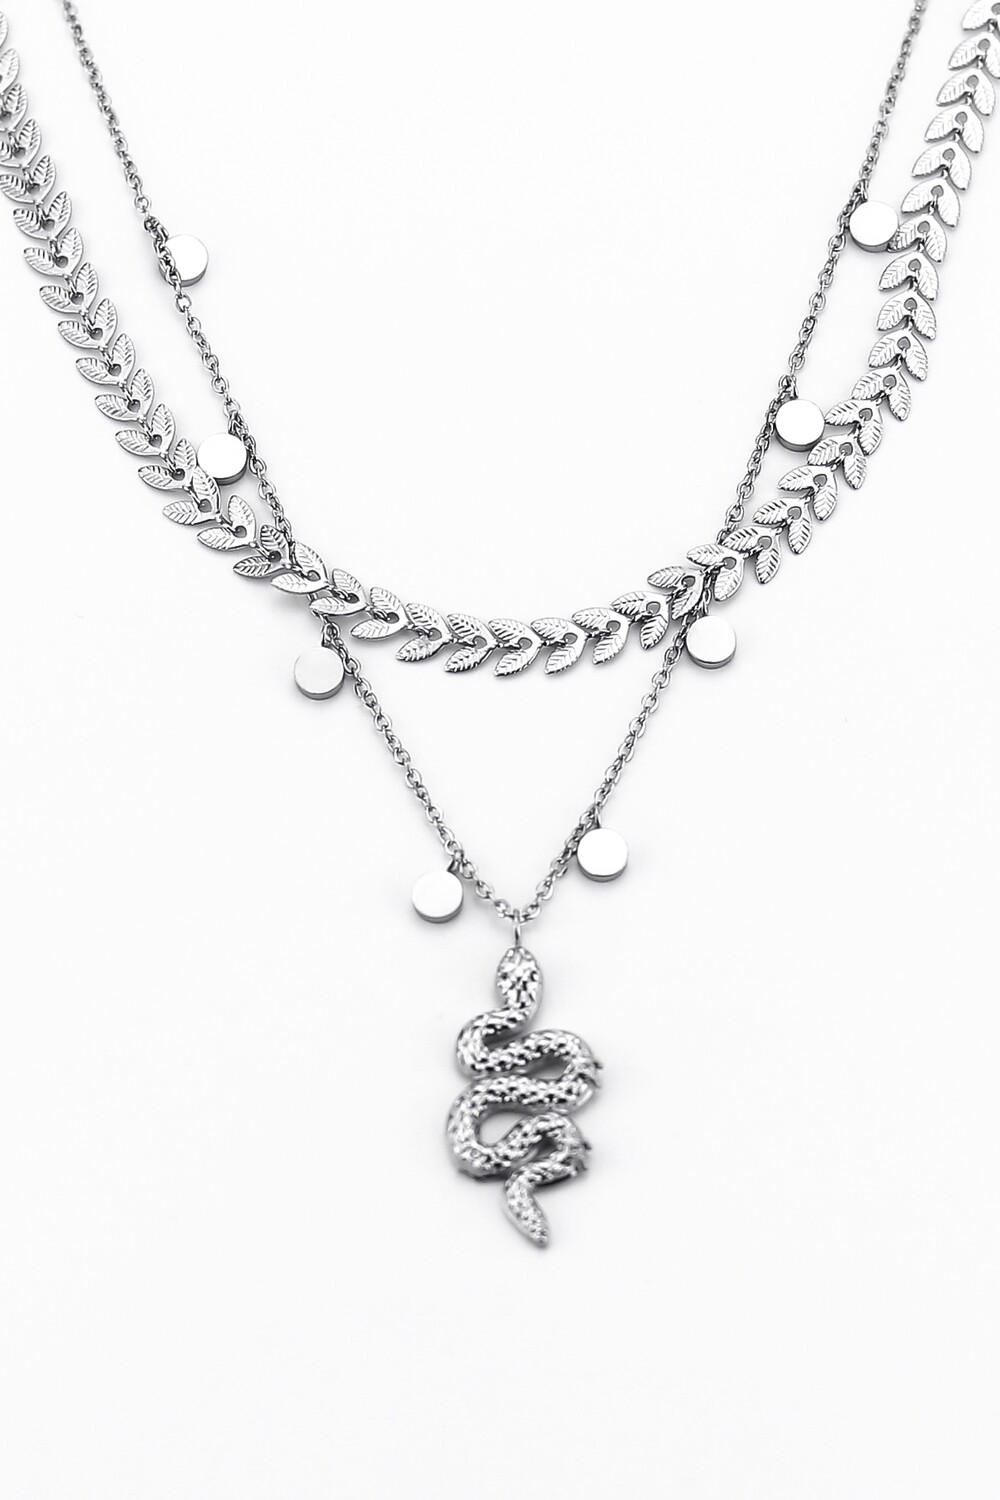 Фантазийное ожерелье "Змея"